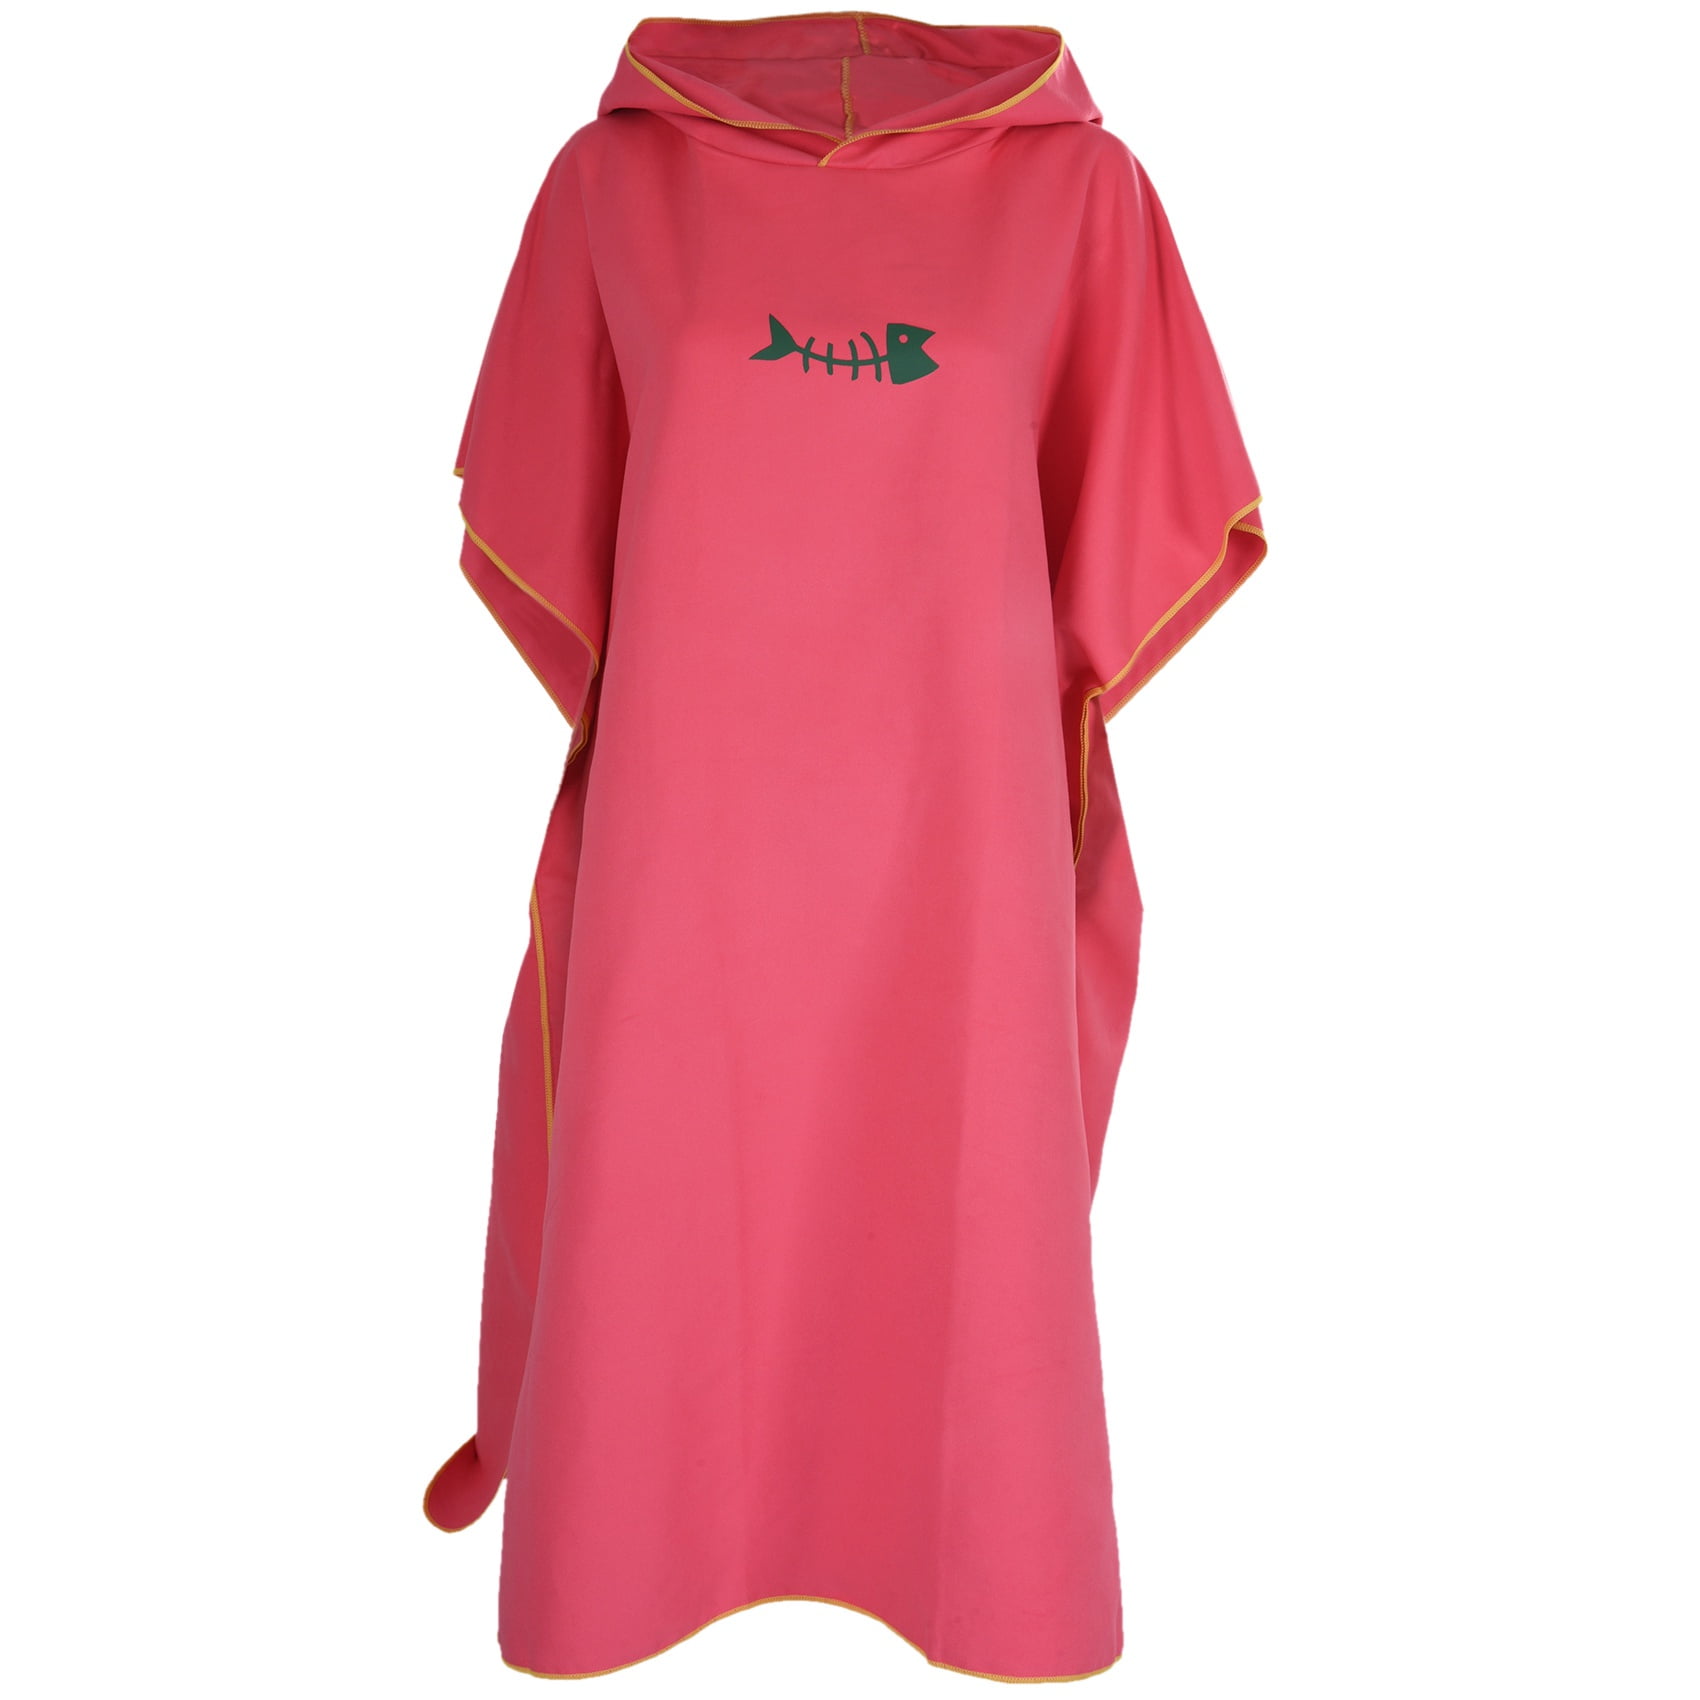 Unisex Changing Robe Hooded Bathrobe Poncho Fast-dry Dress Kaftan Nightshirt Top